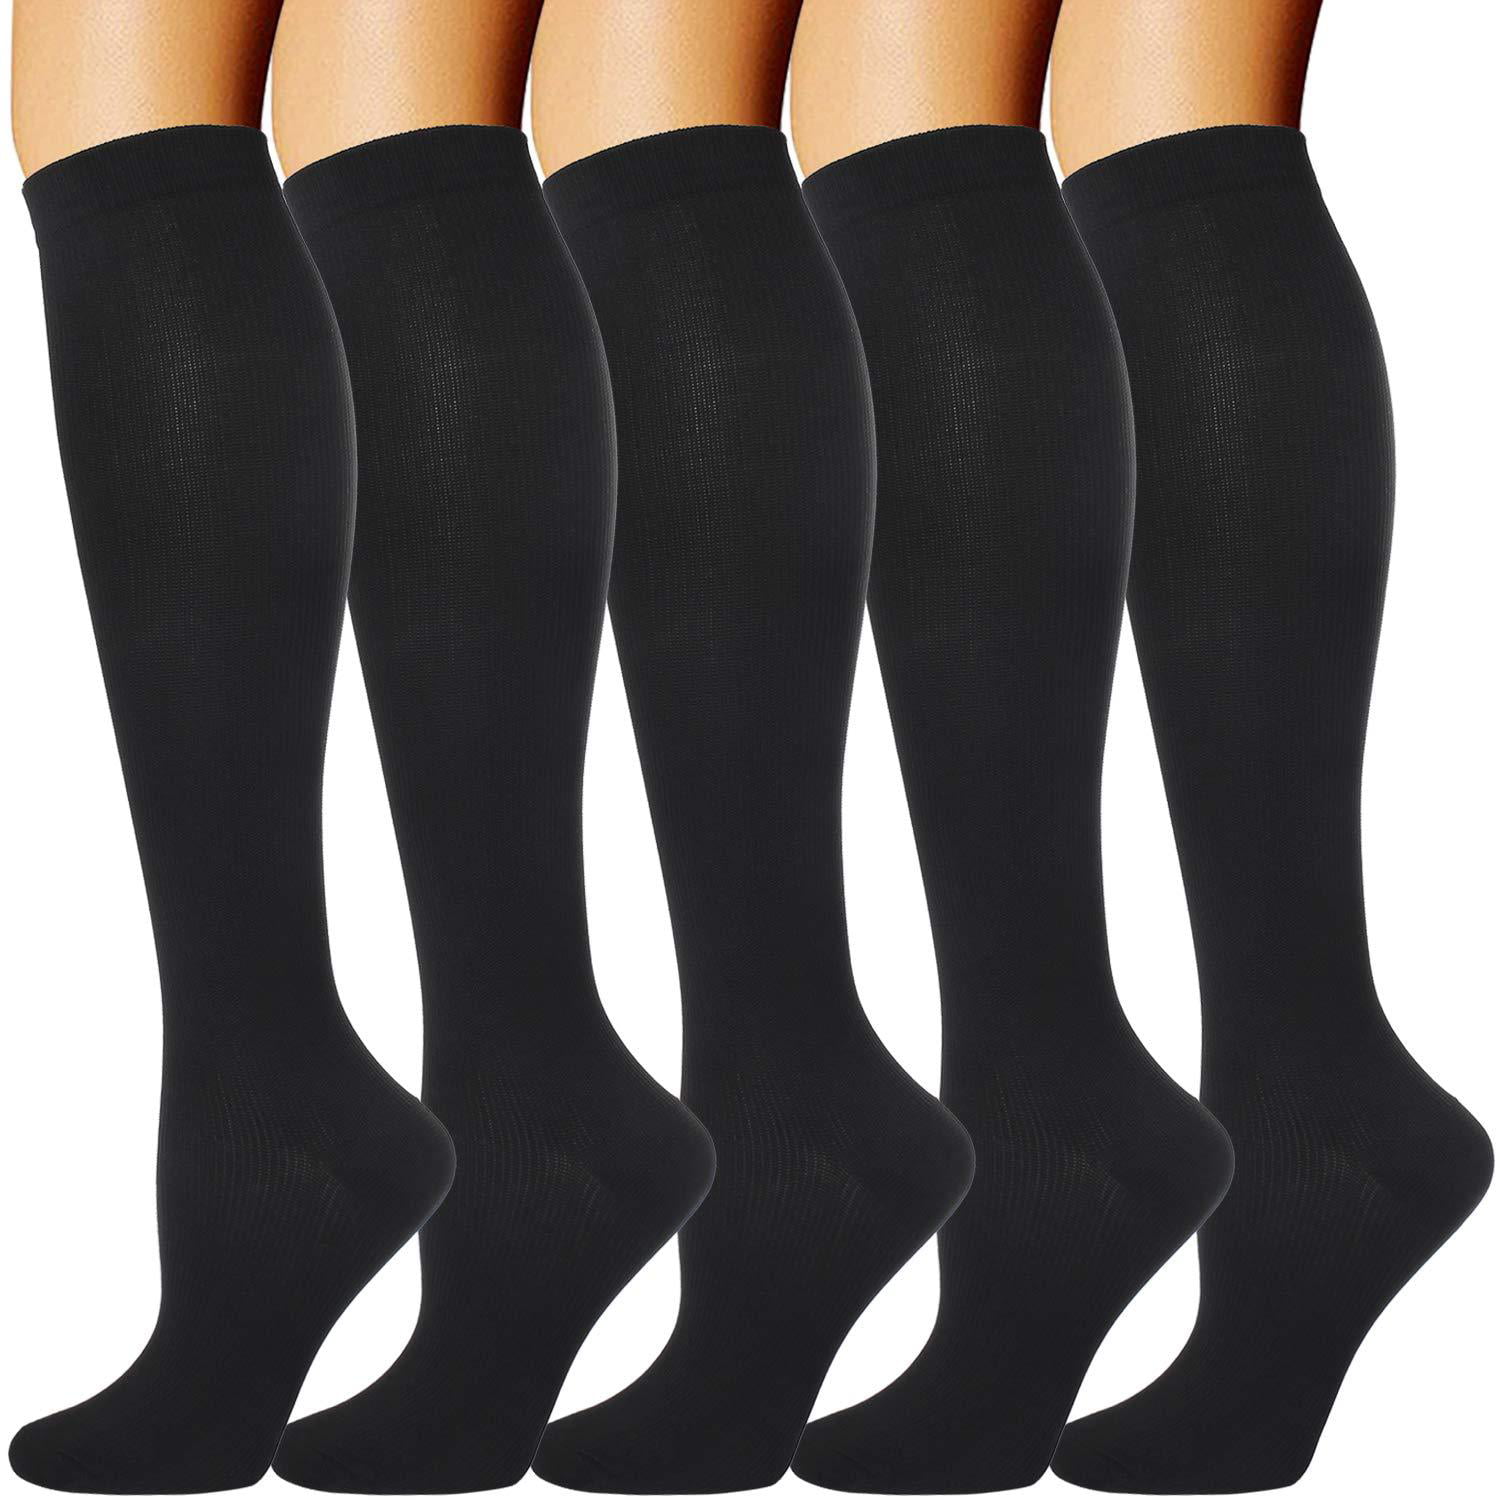 5 Pairs Compression Socks for Men Women 20-30 mmHg for Running Nurses ...